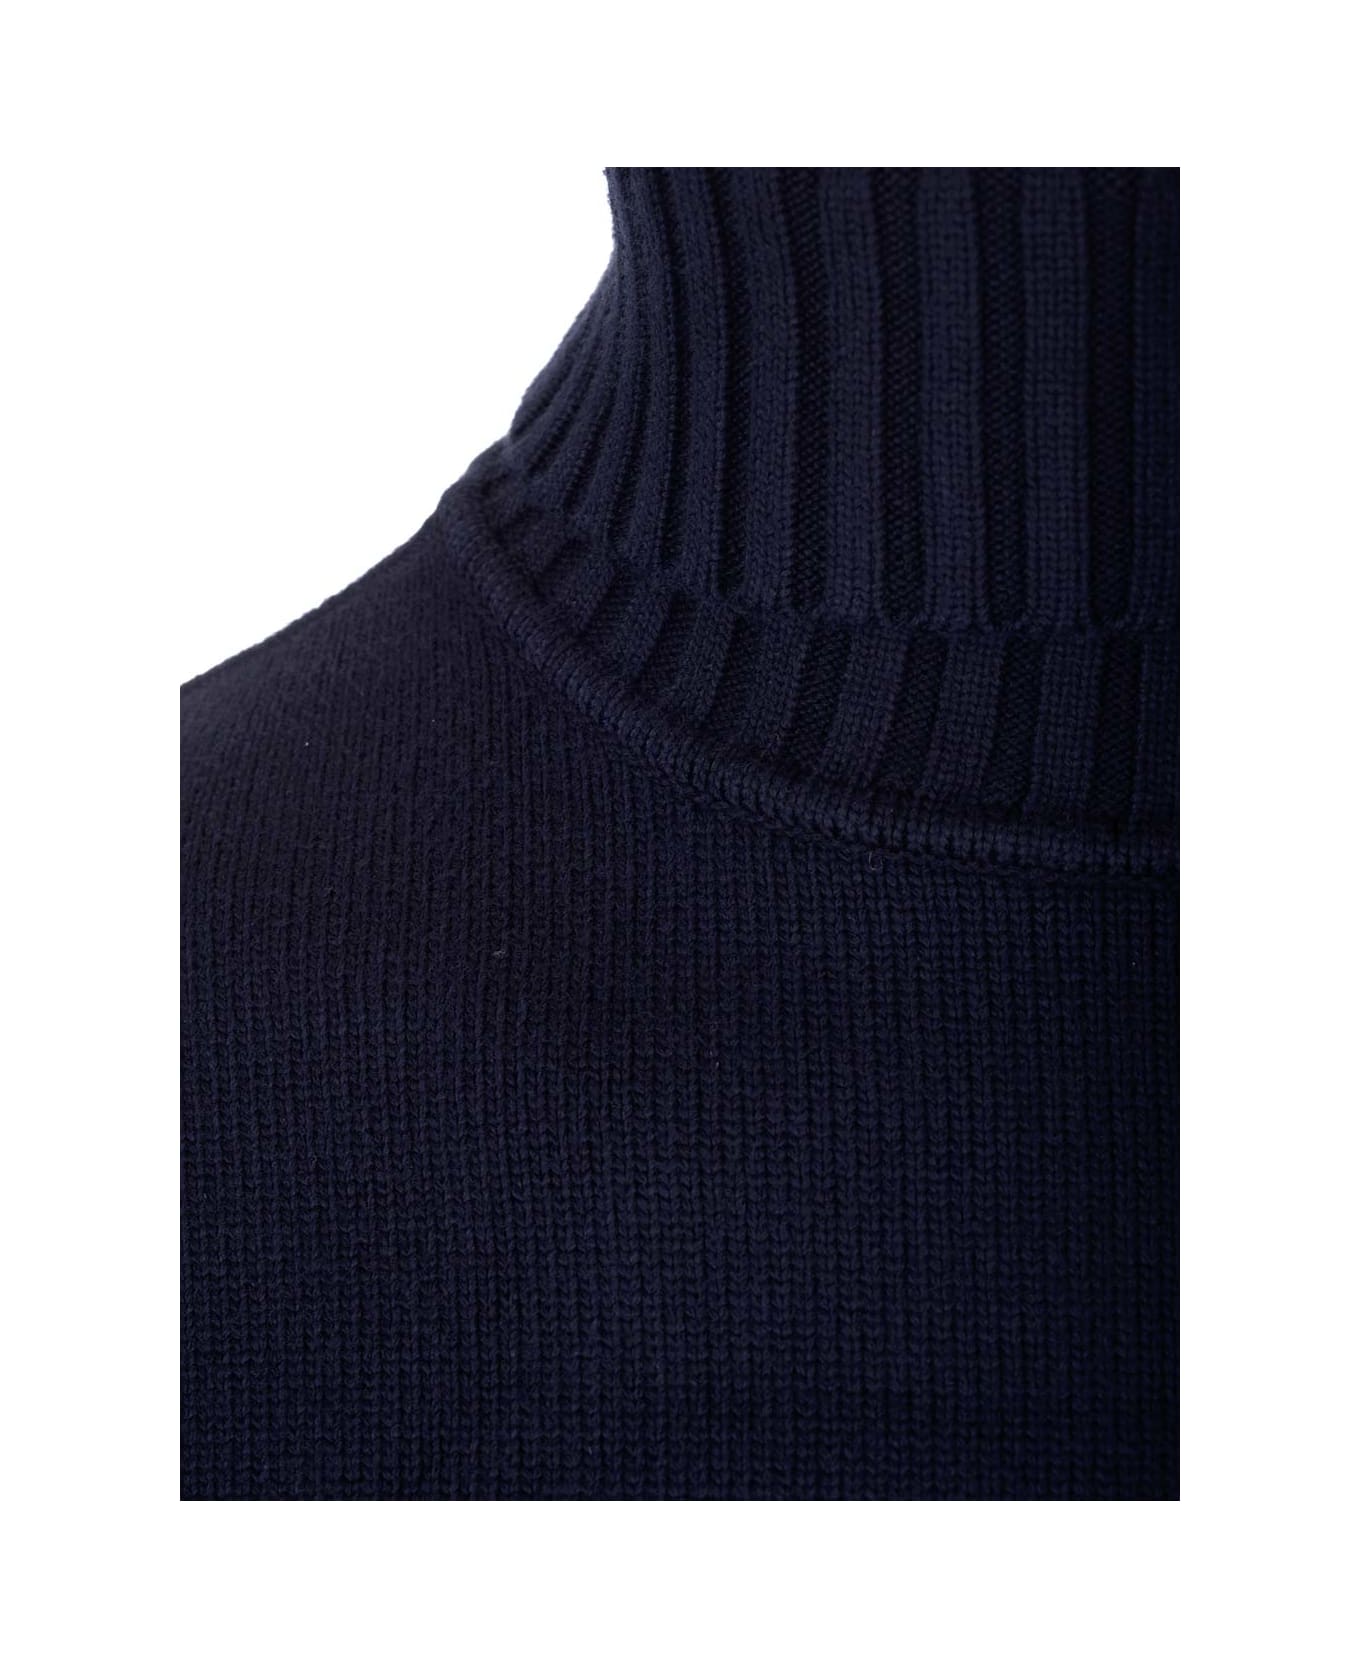 Stone Island Turtleneck Sweater - blue ニットウェア